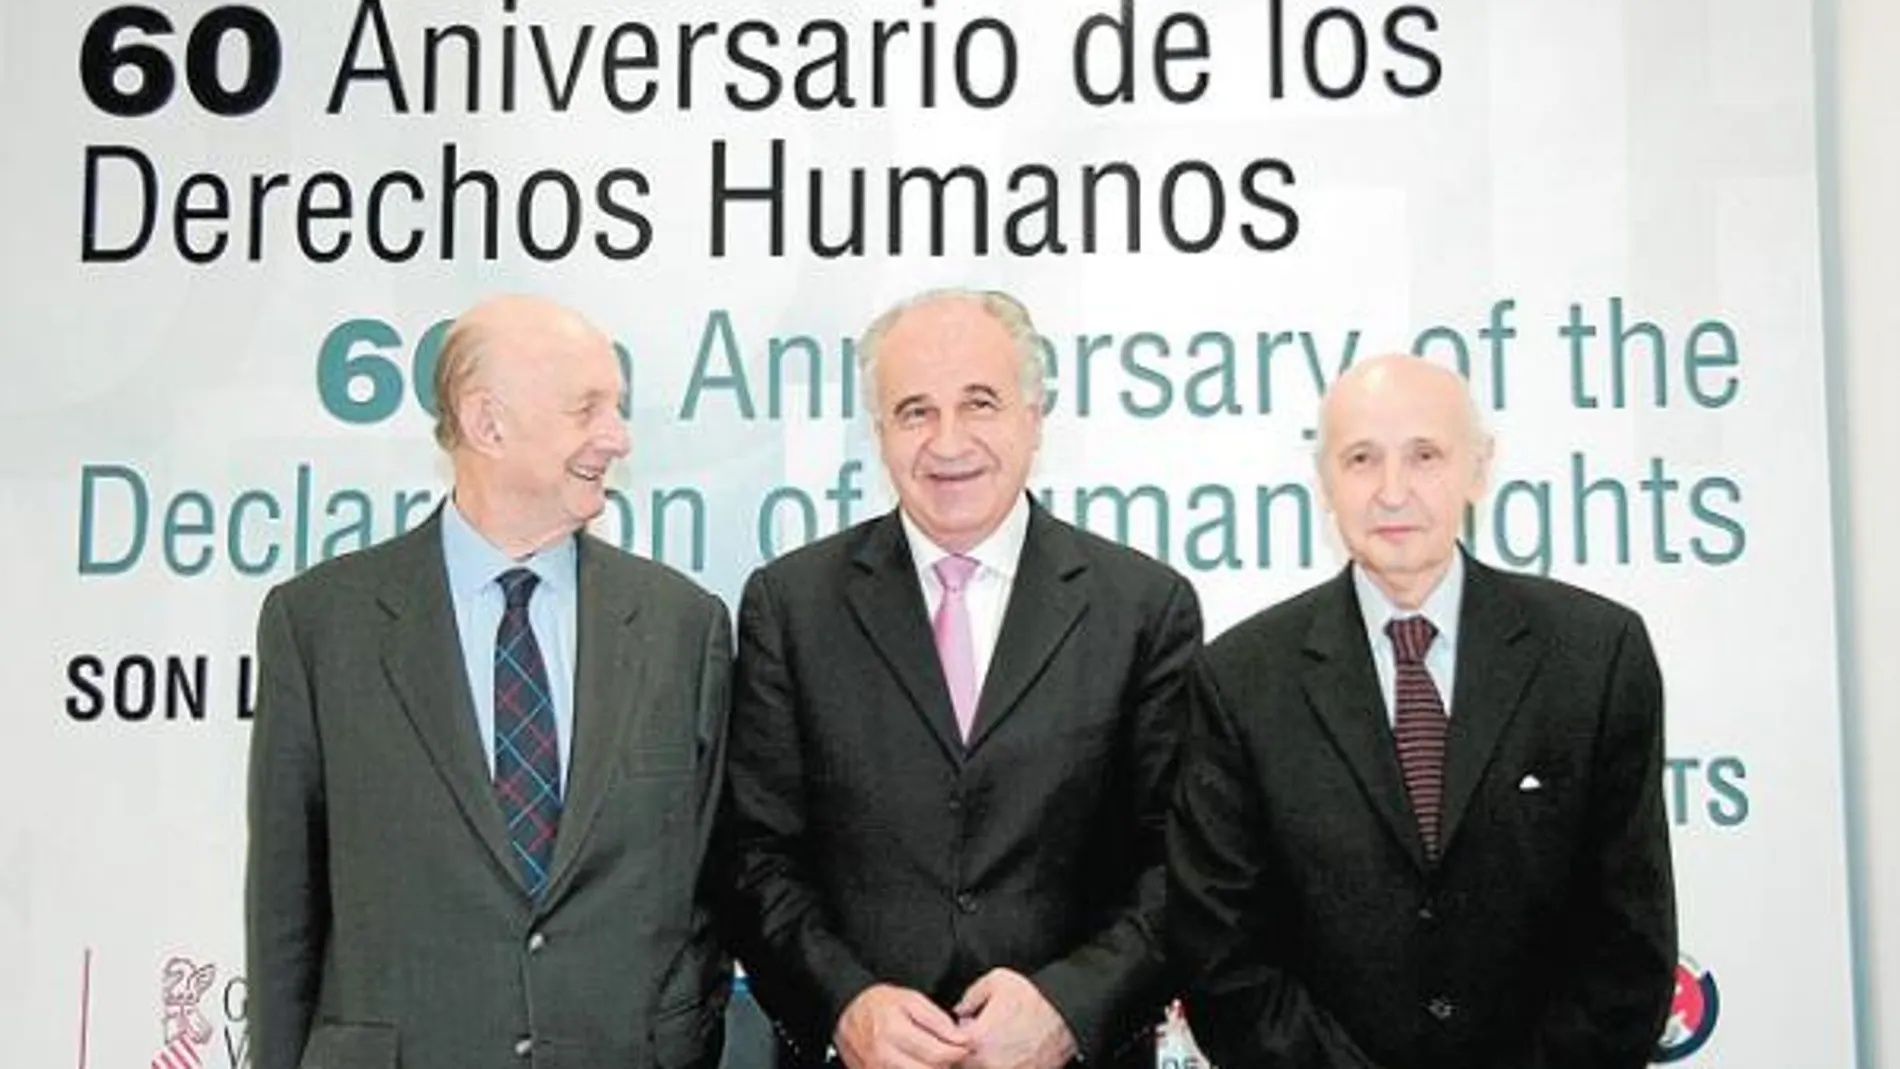 Ricardo Díez Hochleitner, patrono de la Fundación Cultura de Paz, Rafael Blasco y Santiago Grisolía